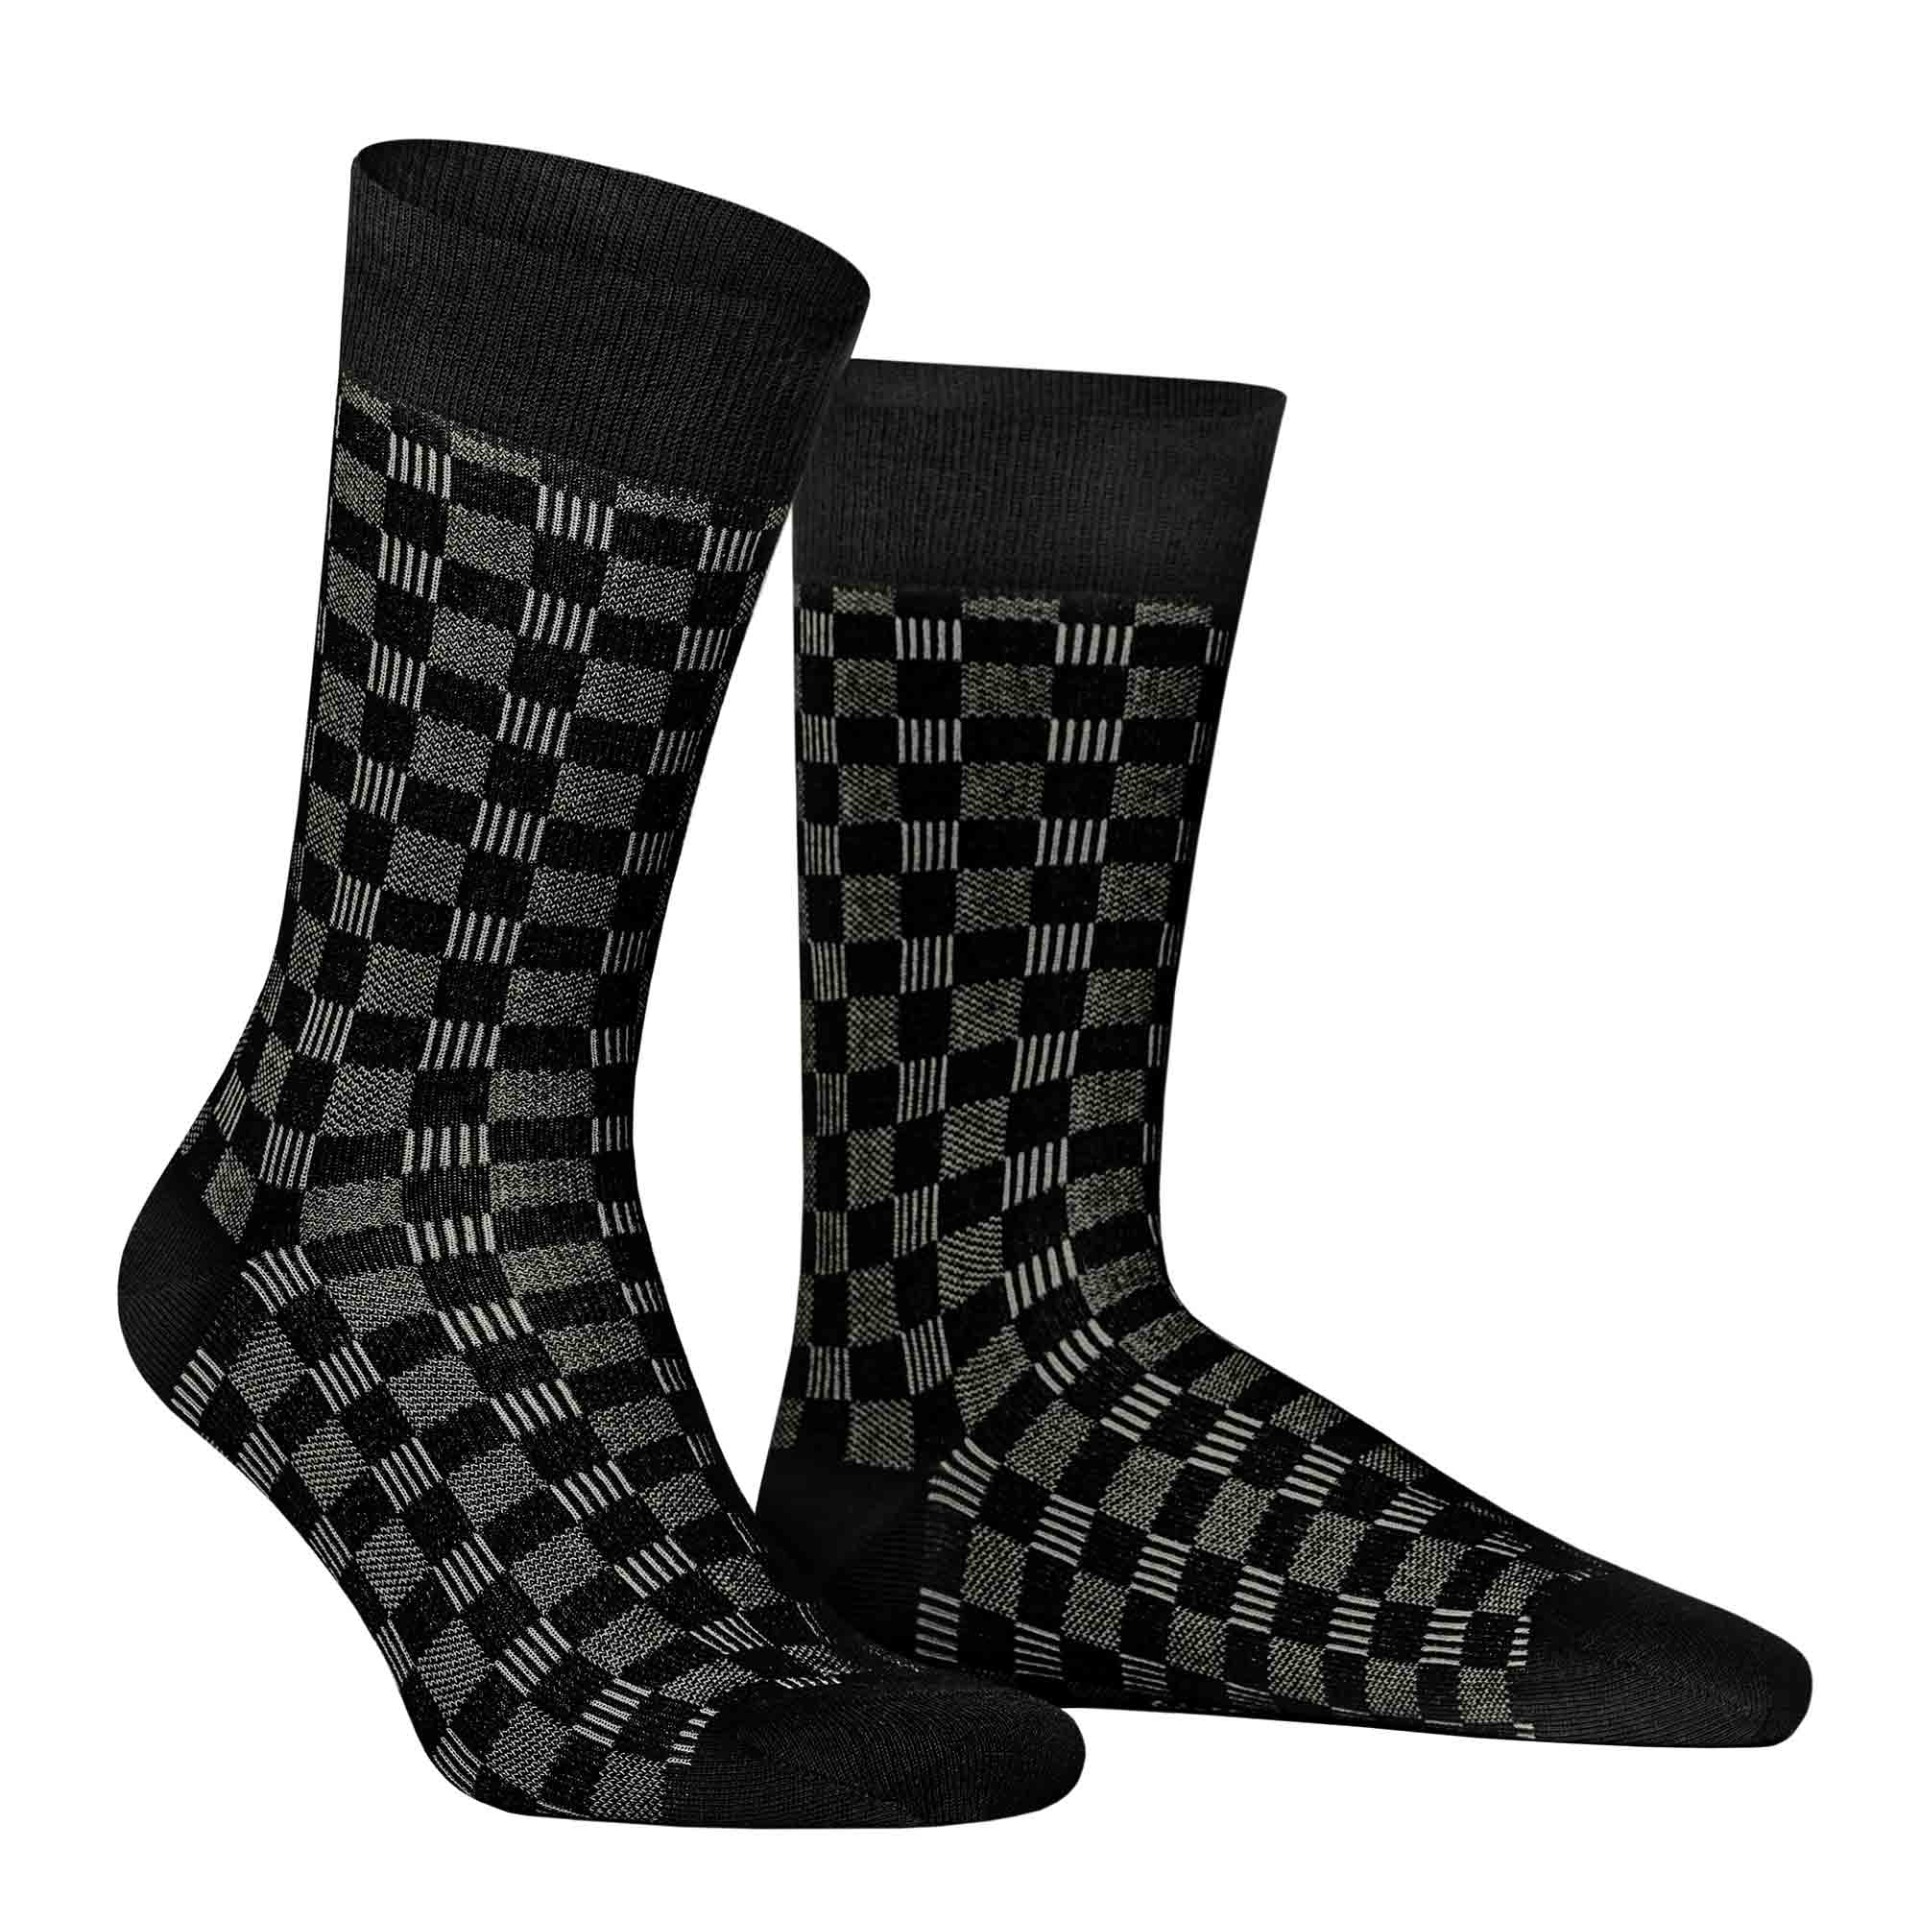 HUDSON Herren BOARD -  39/42 - Socken mit Schachbrett-Muster - Black (Schwarz)